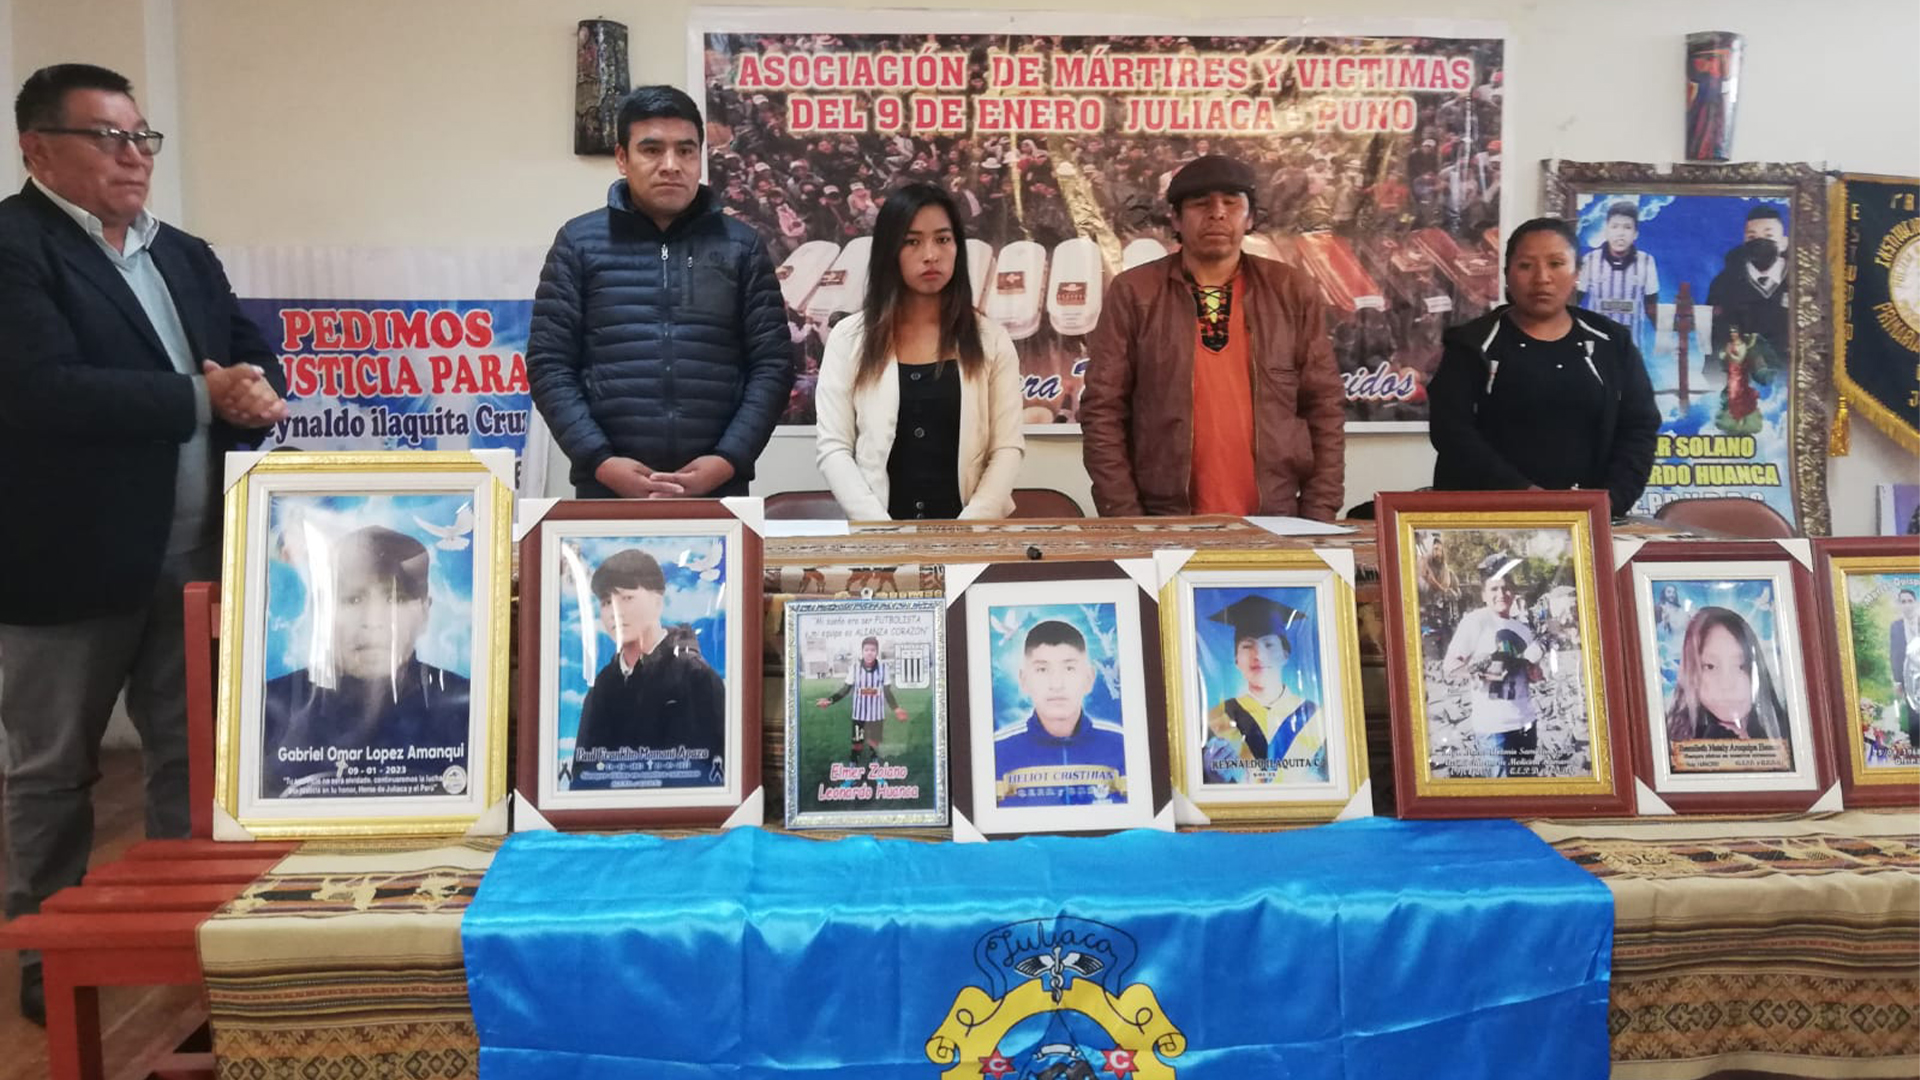 Conformaron Asociación de Mártires y Víctimas de las protestas del 9 de enero